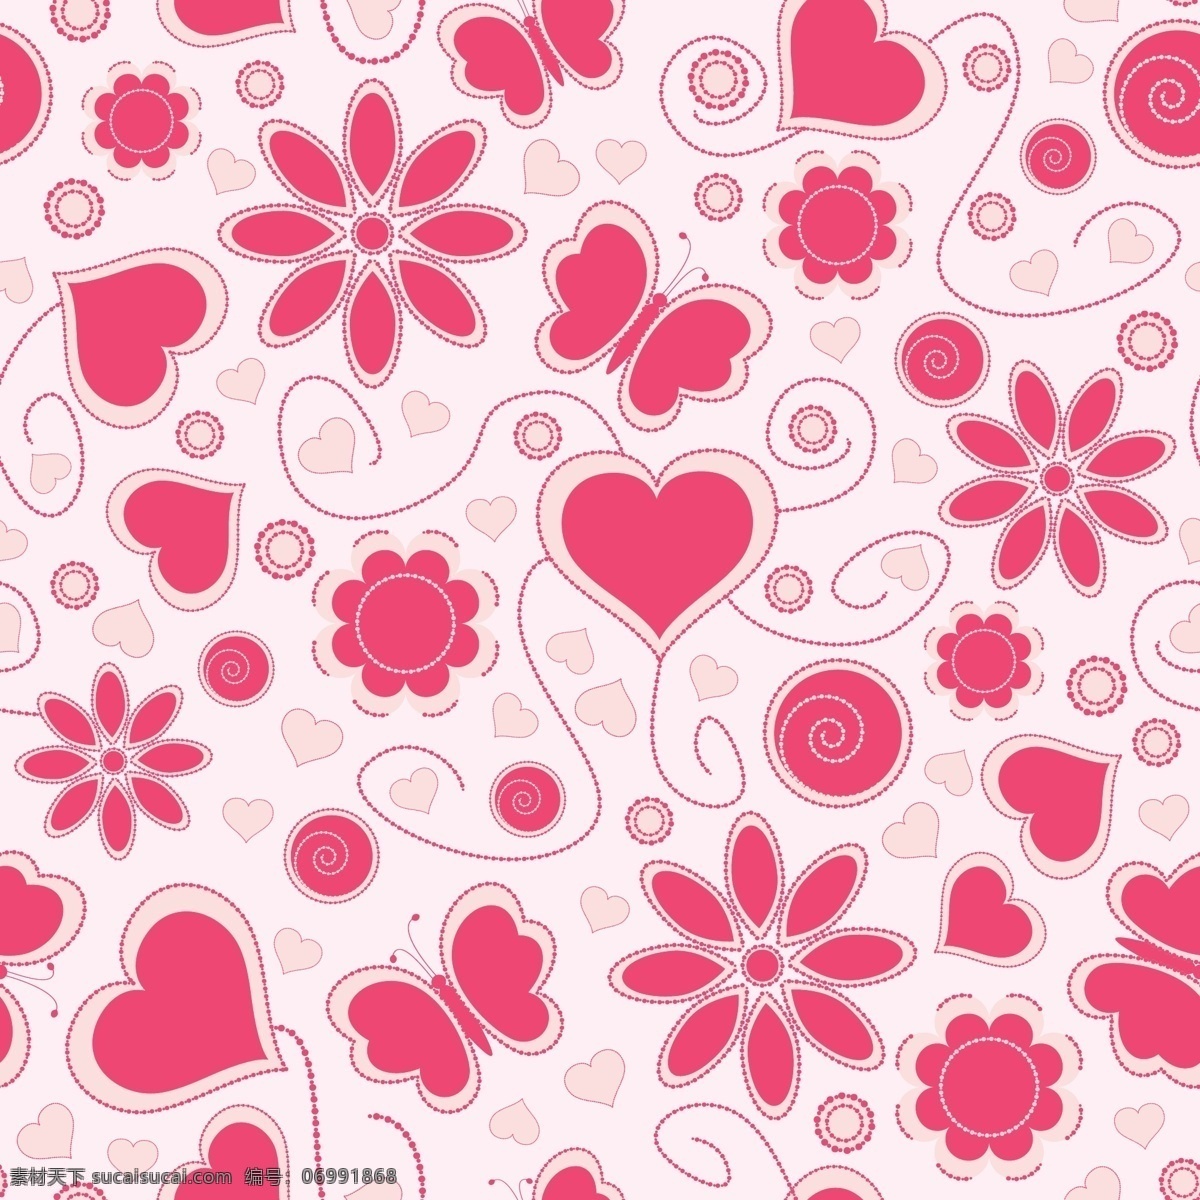 鲜花 花纹 背景 ai素材下载 粉红色 花朵 可爱 小花 矢量 免费 矢量图 其他矢量图